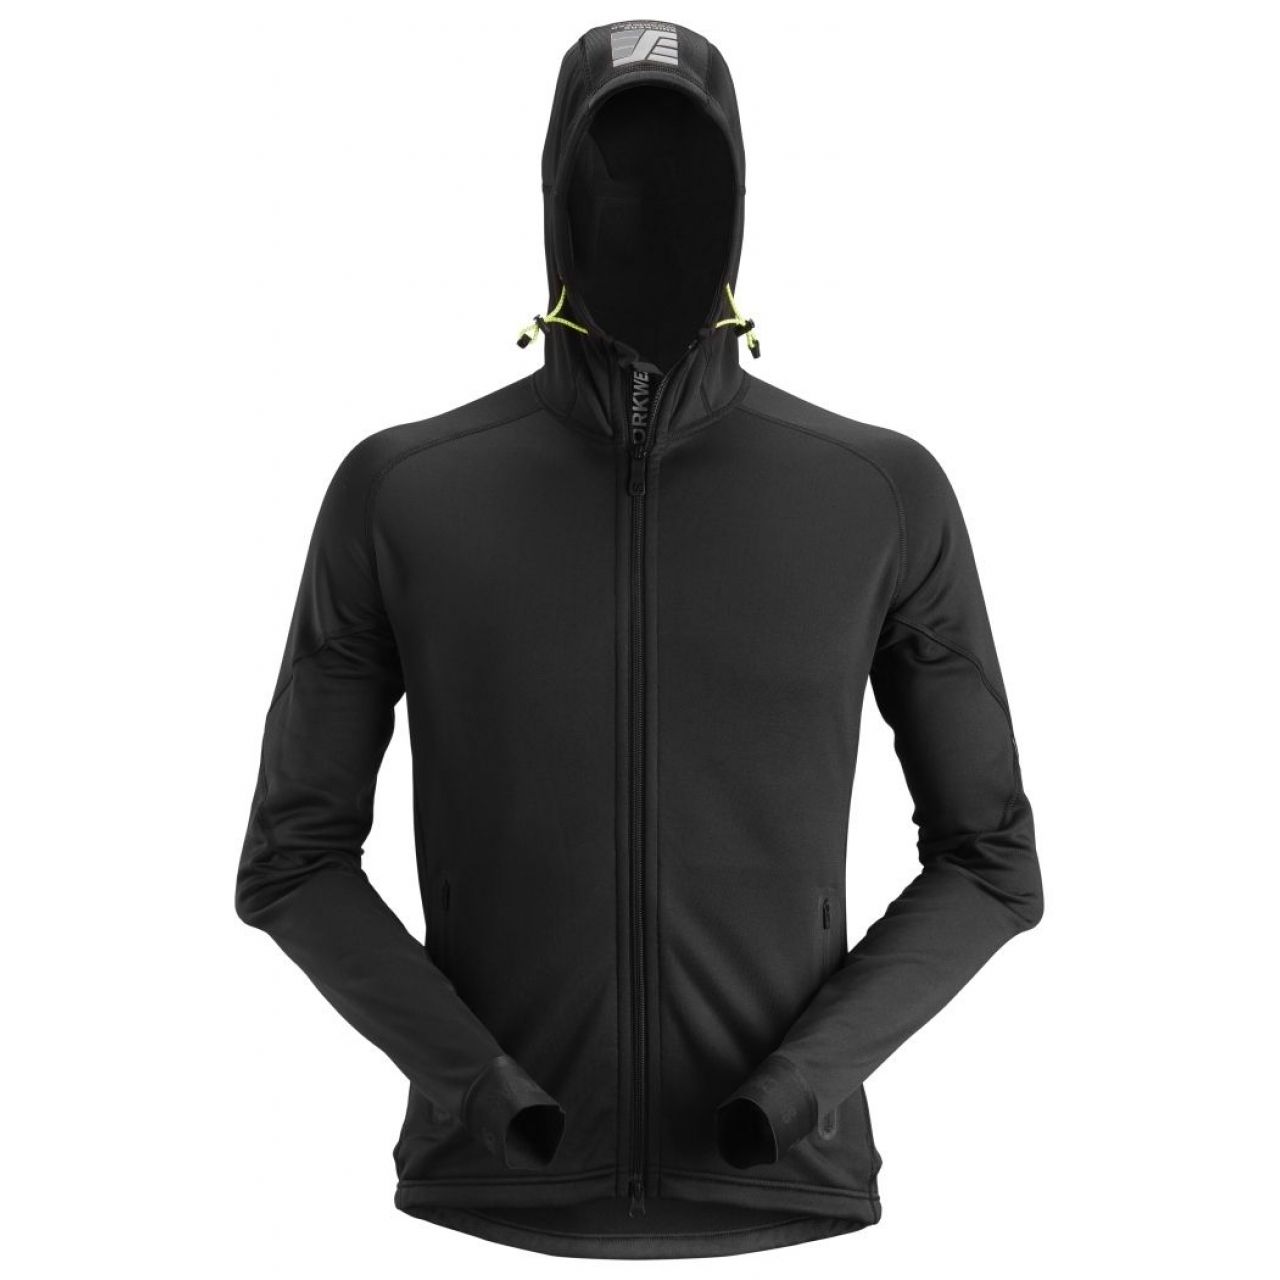 Chaqueta elastica FlexiWork fleece Polartec® 2.0 con capucha negro talla XXXL